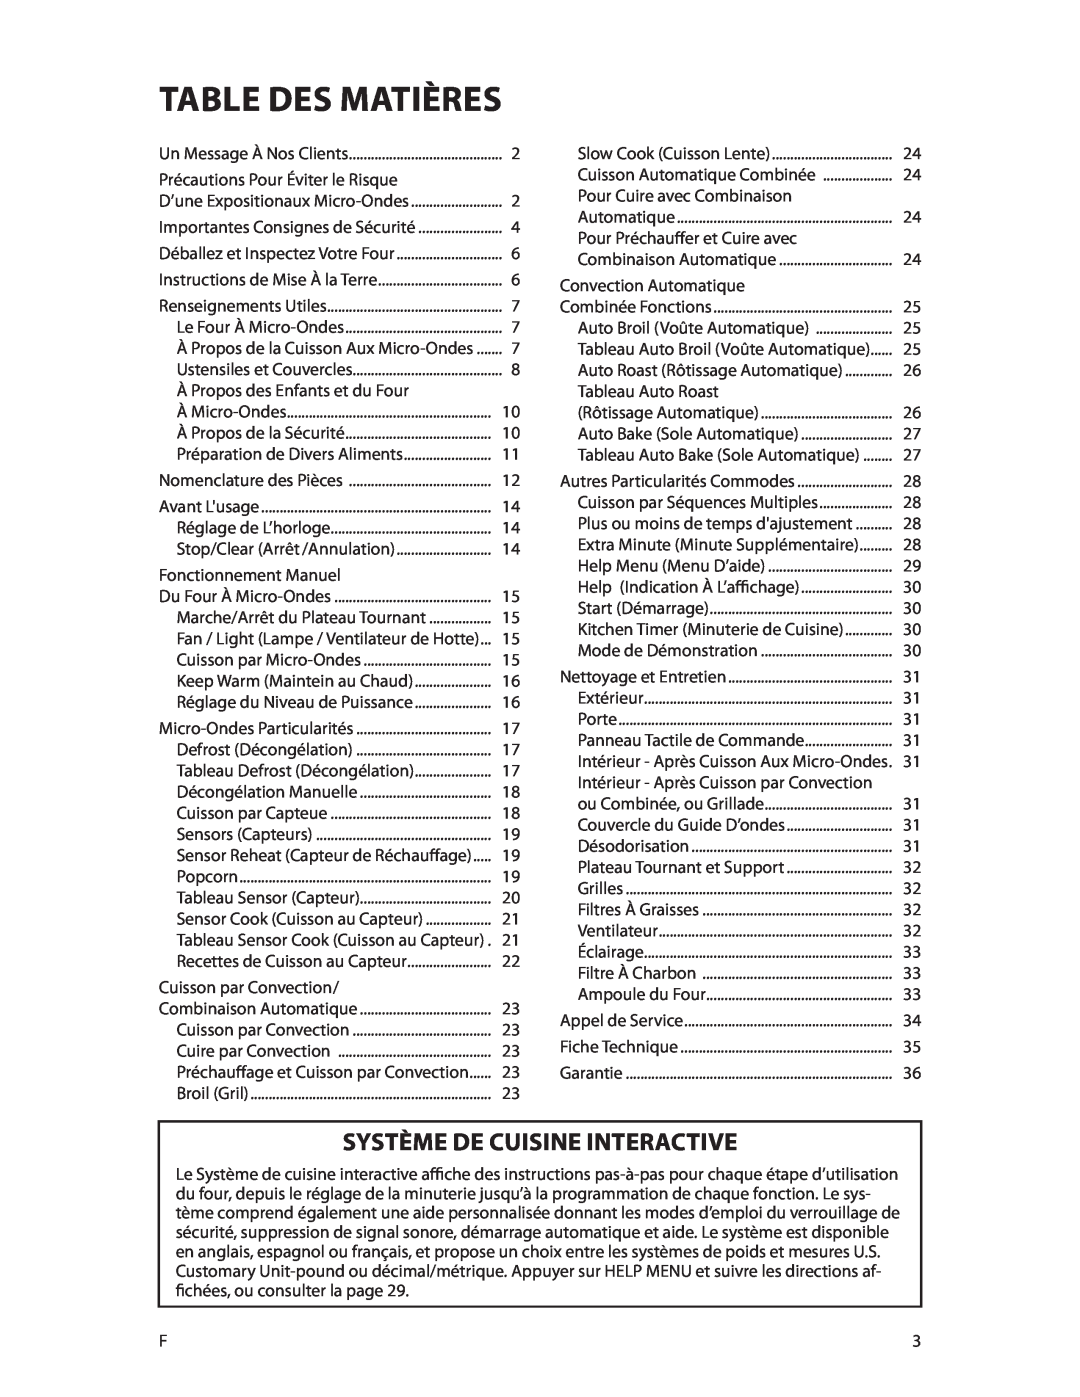 DCS CMOH30SS manual Table des matières, Système De Cuisine Interactive 